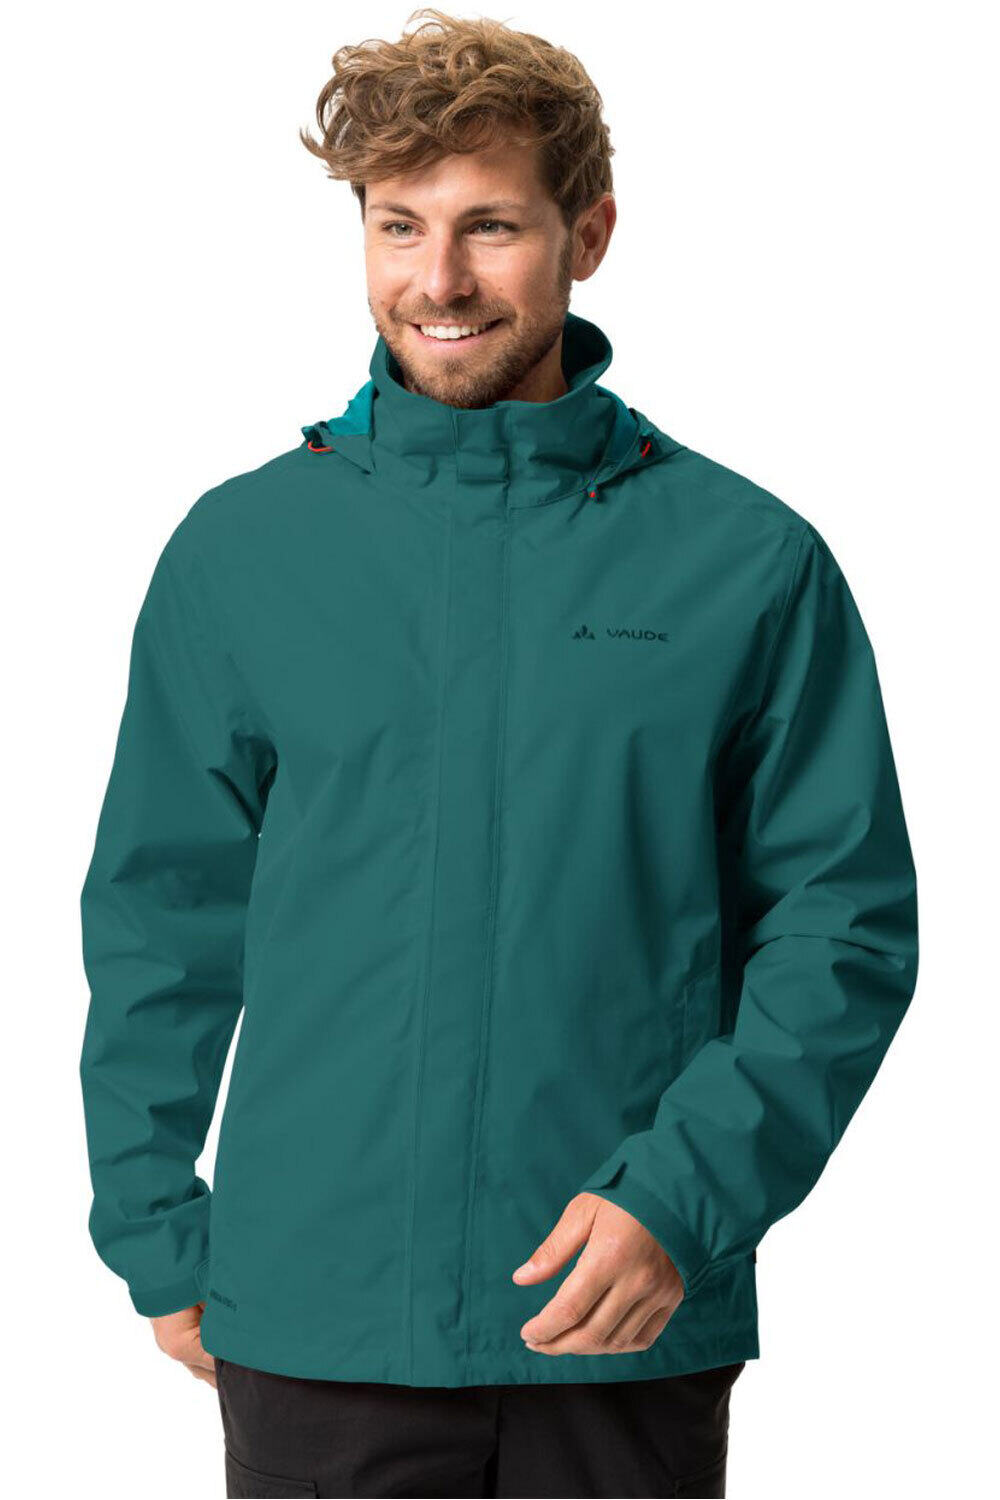 Vaude chaqueta impermeable hombre Men's Escape Light Jacket vista frontal